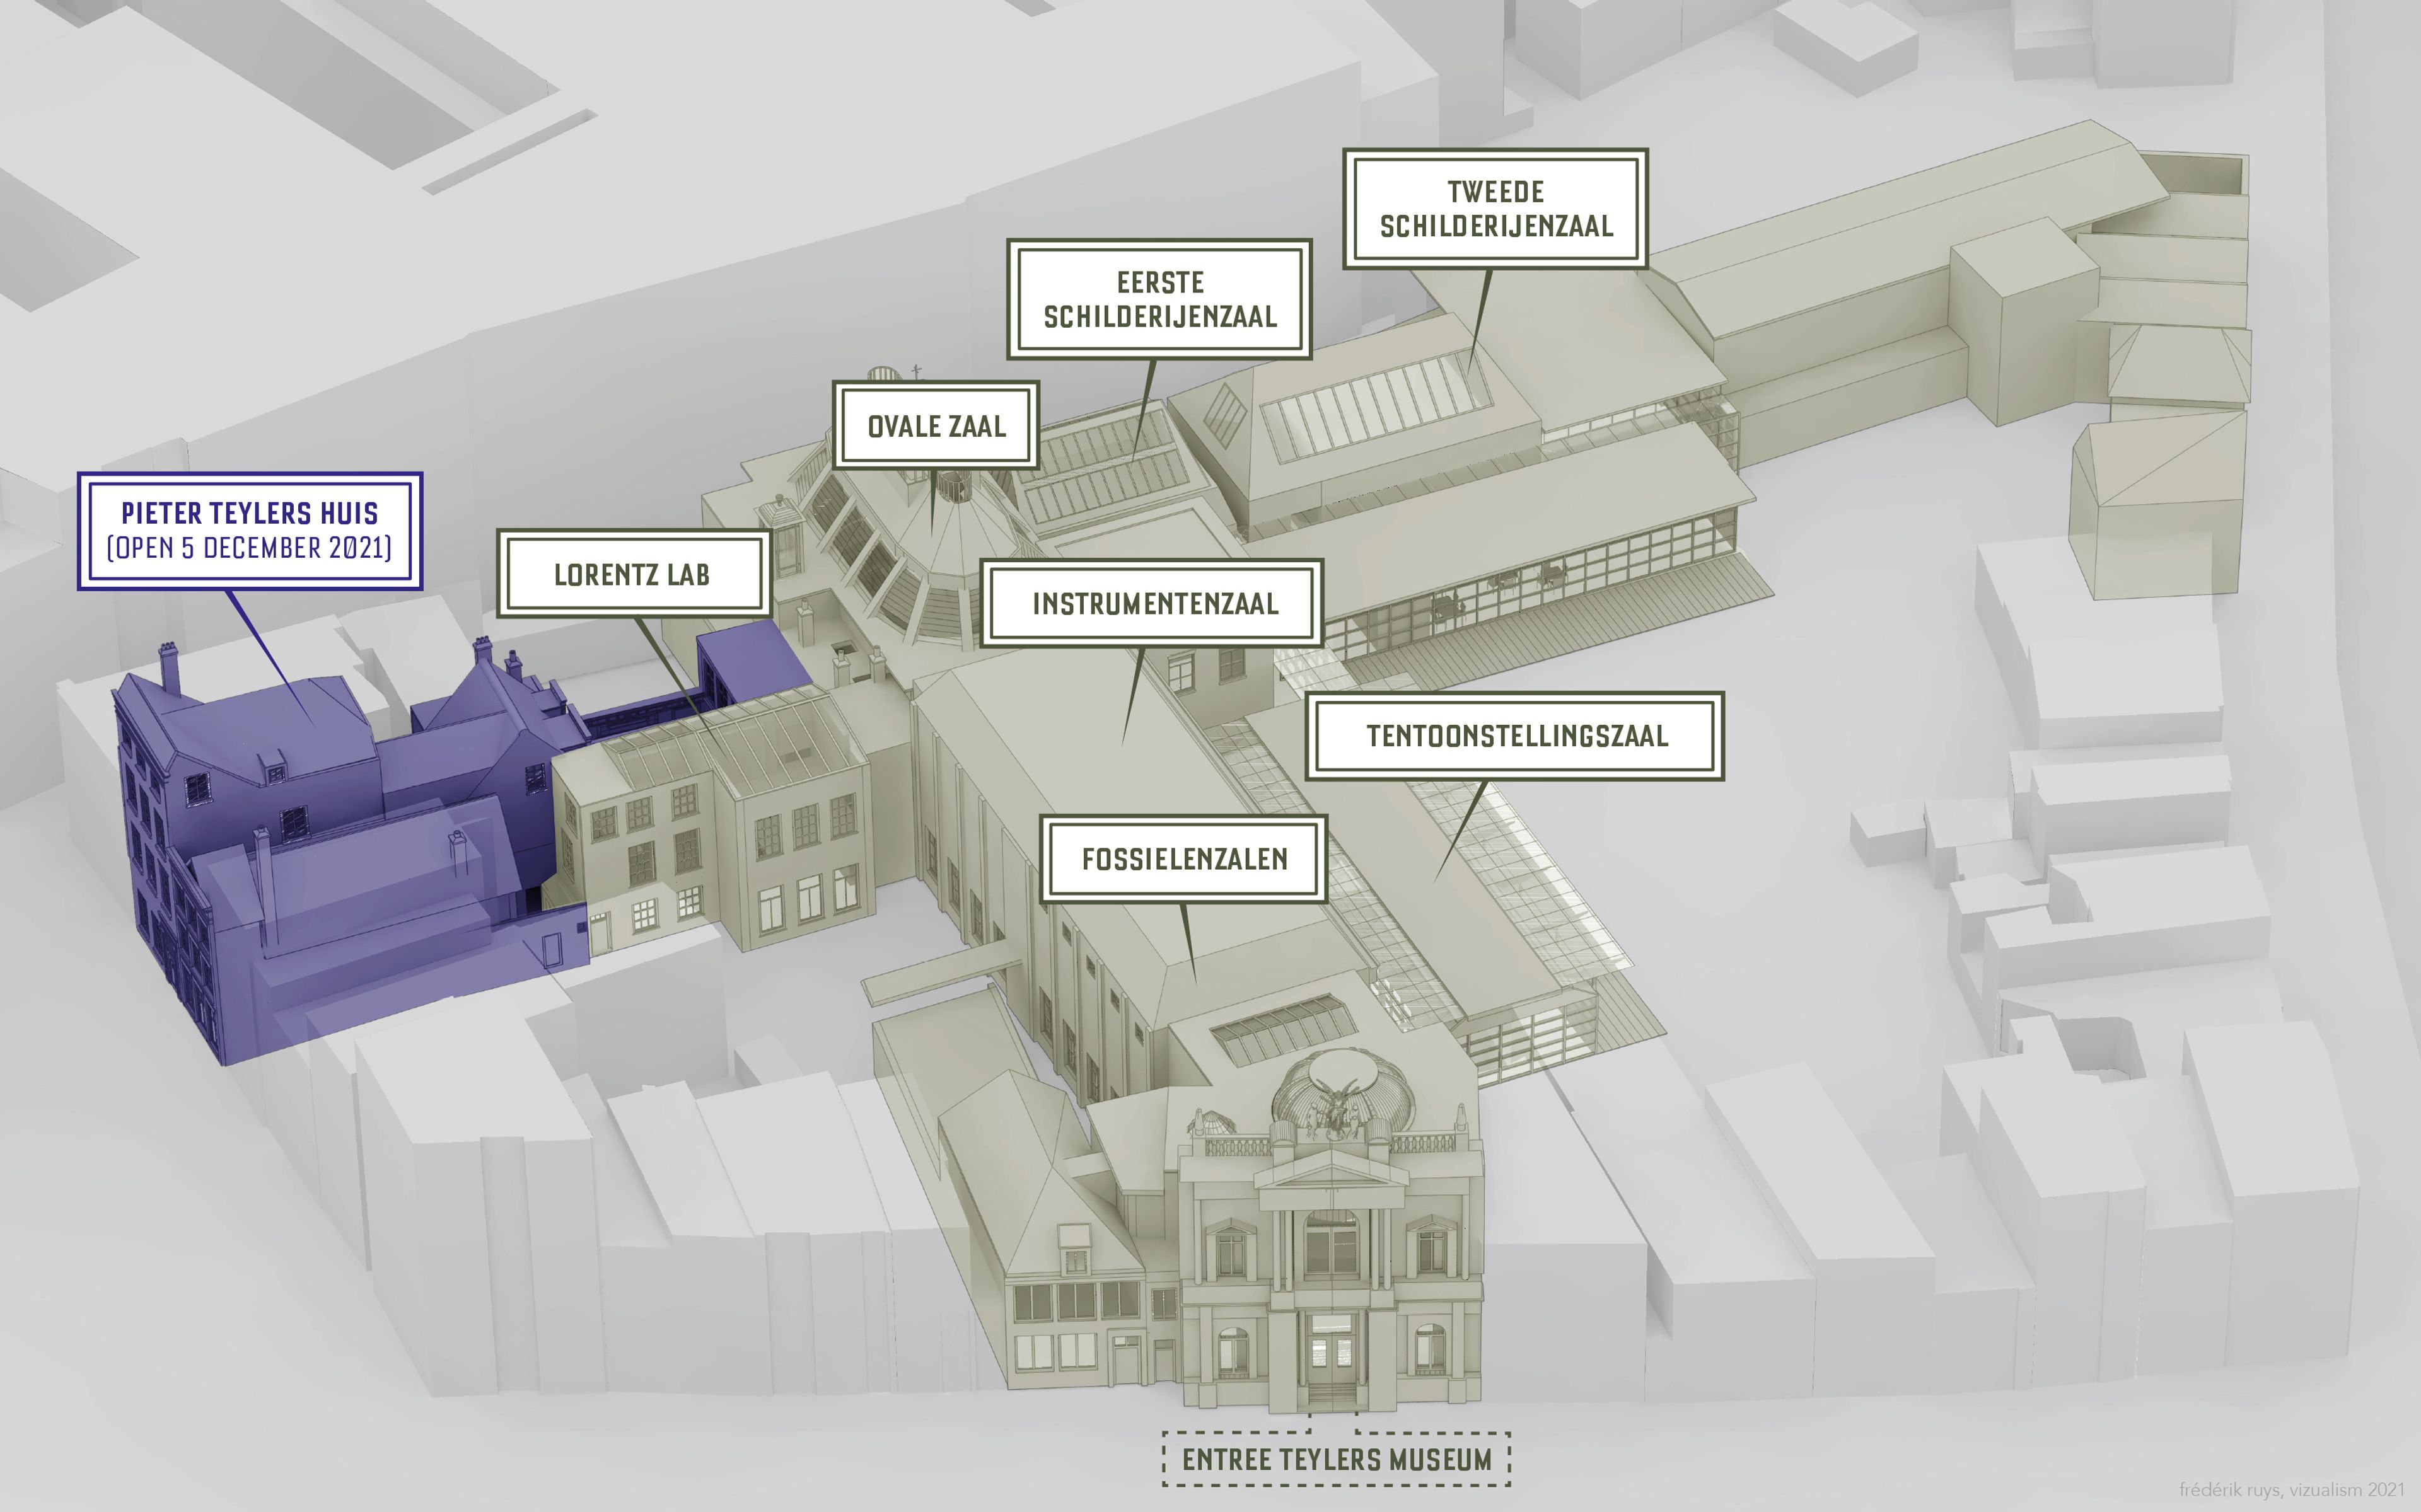 3D-visualisatie van het museum en Pieter Teylers Huis.